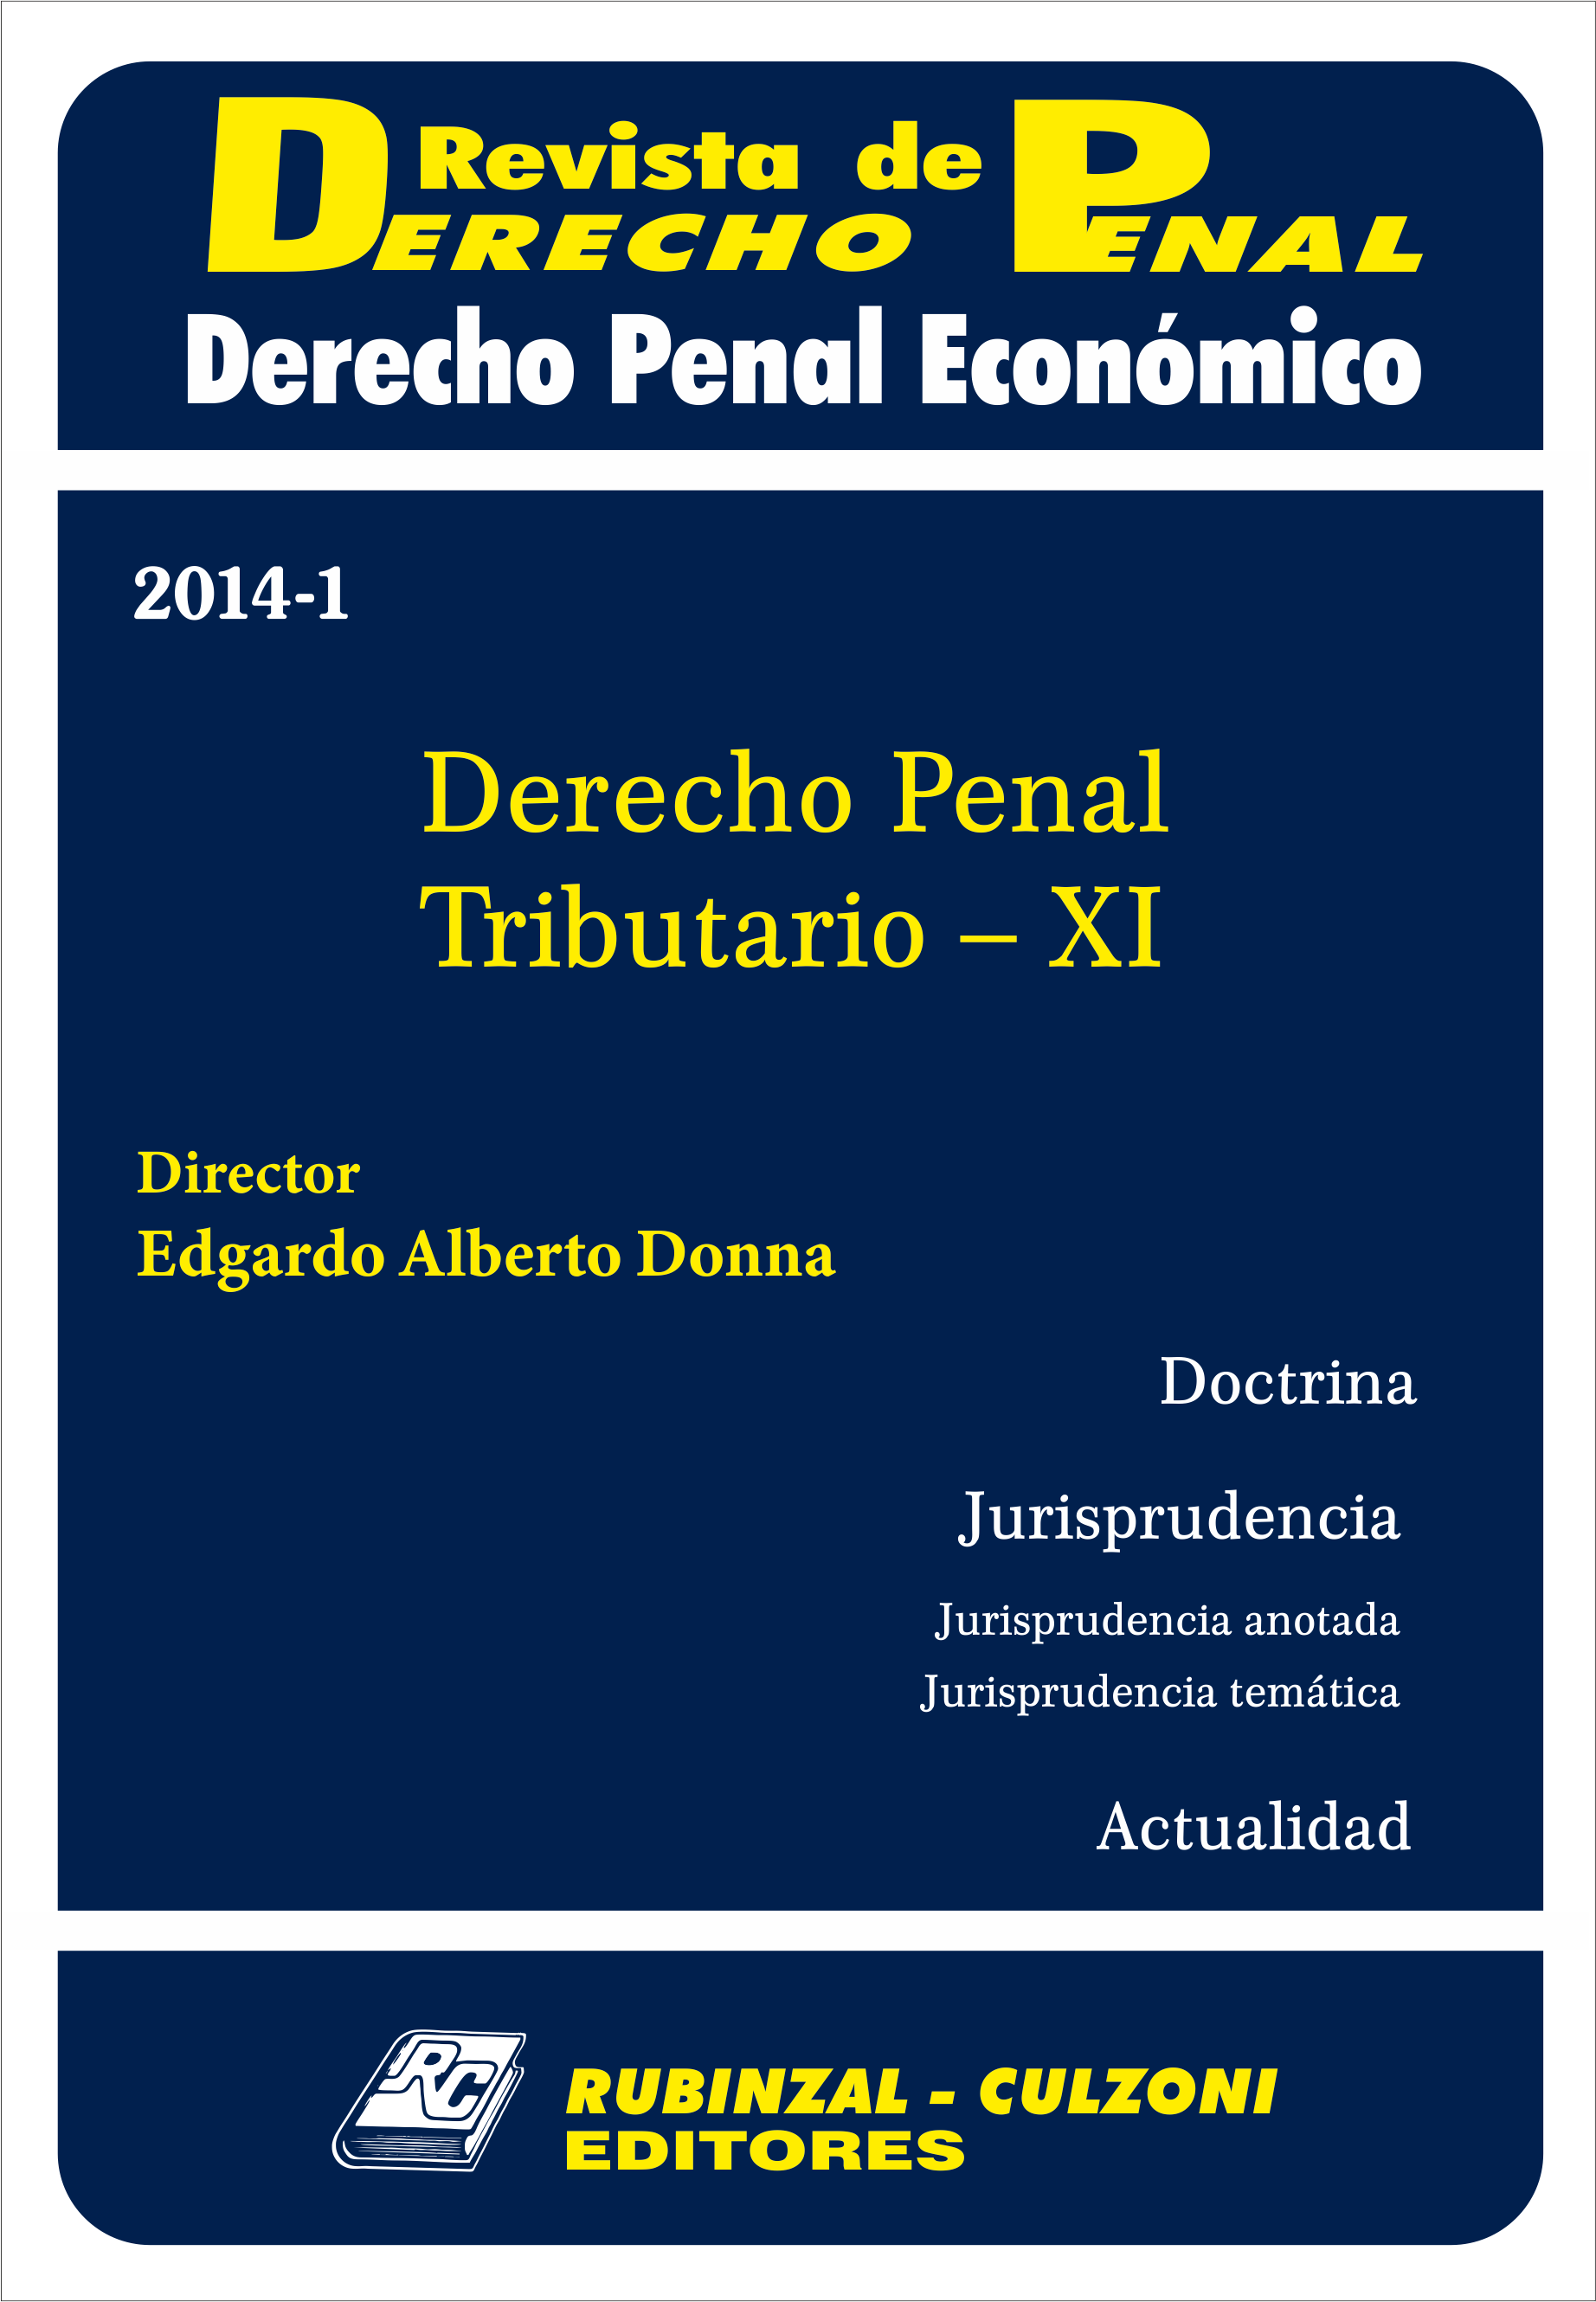 Revista de Derecho Penal Económico - Derecho Penal Tributario - XI